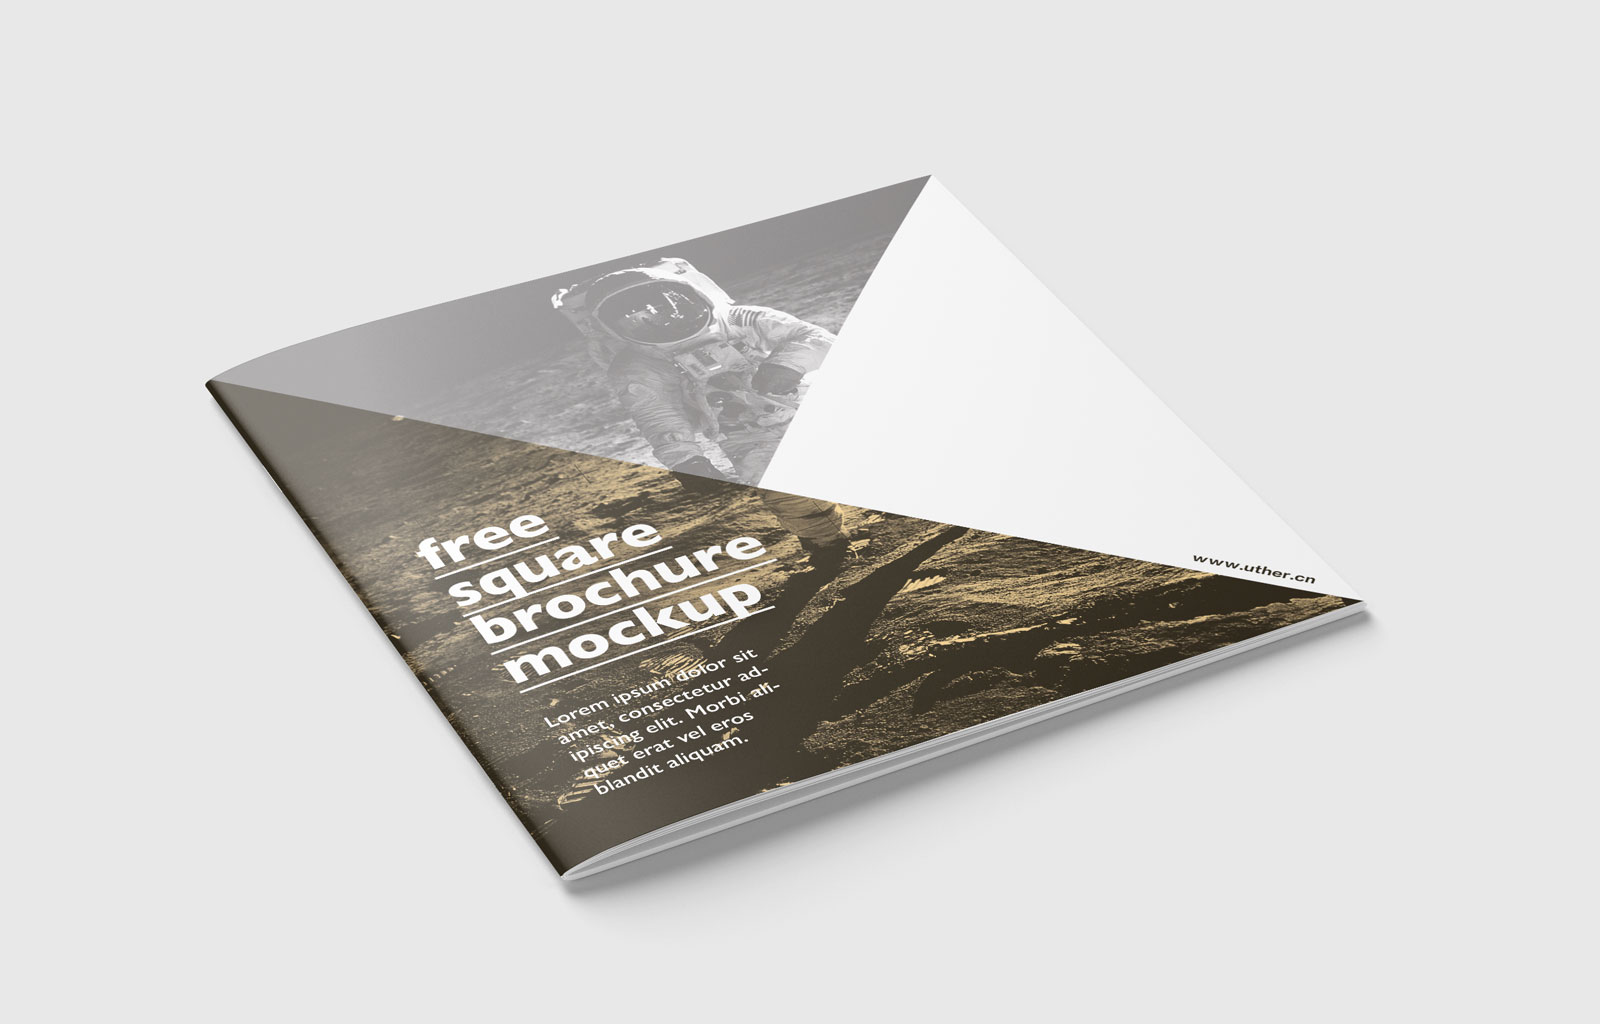 简洁大气正方形画册手册设计展示PSD样机素材brochure mockup .psd素材